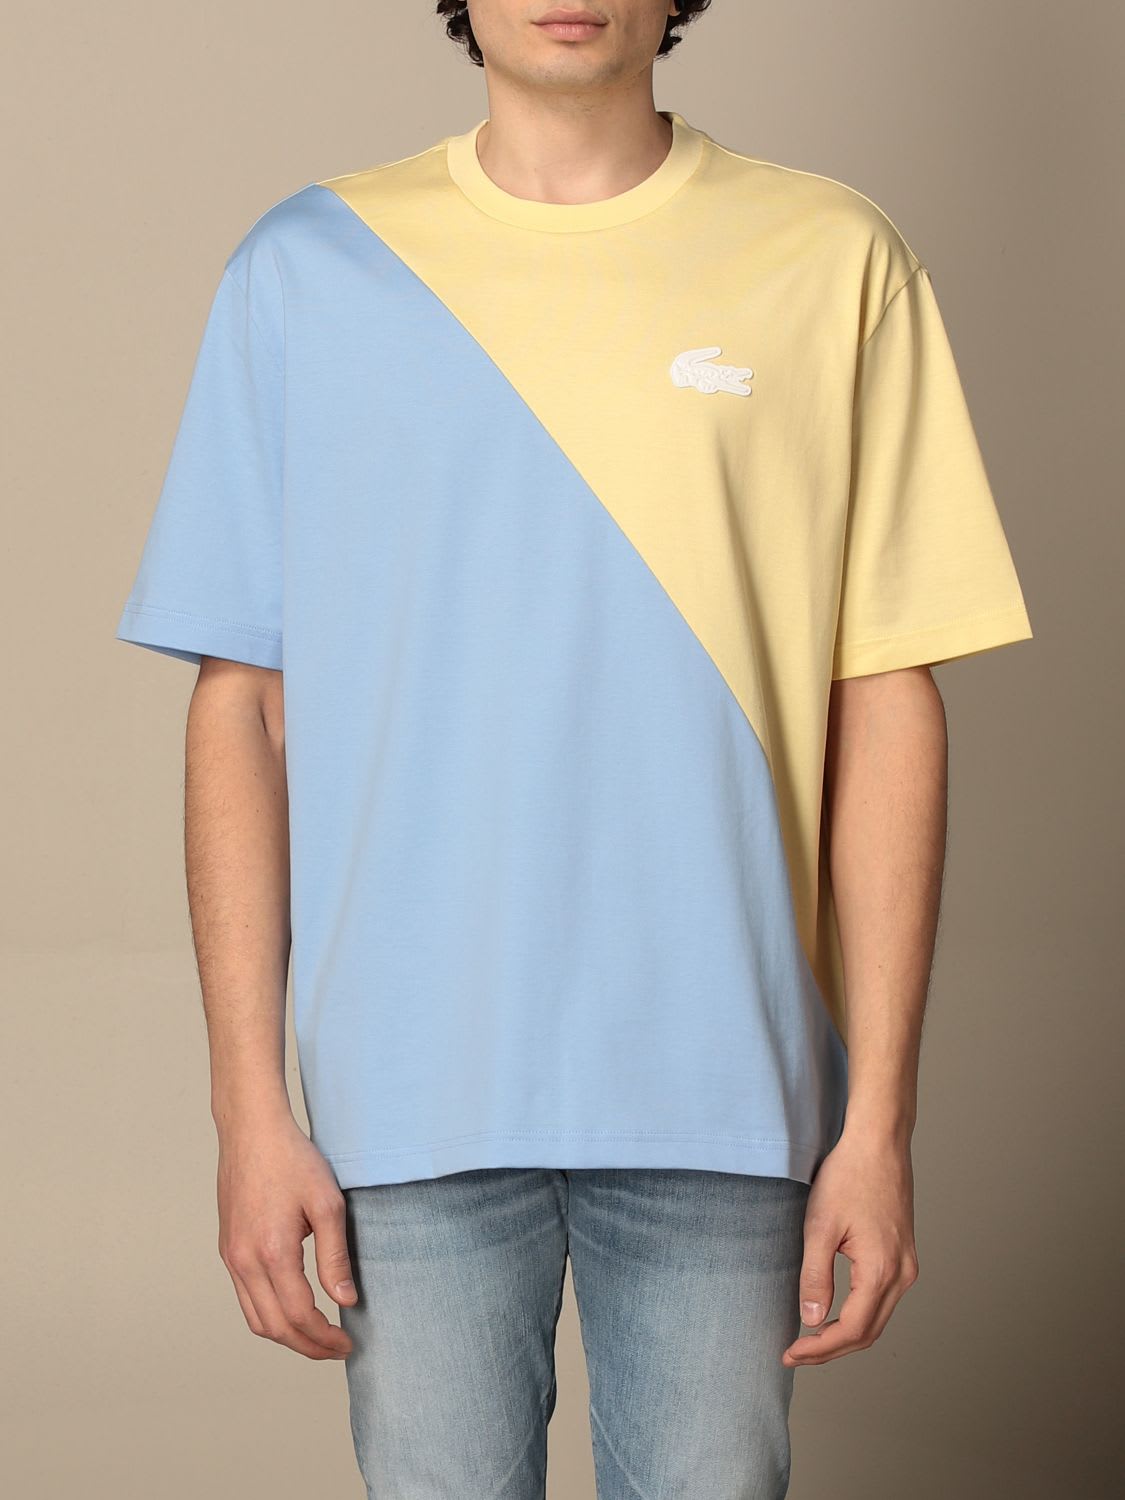 Lacoste L!ve T-shirt Lacoste L!ve Cotton T-shirt With Mini Logo